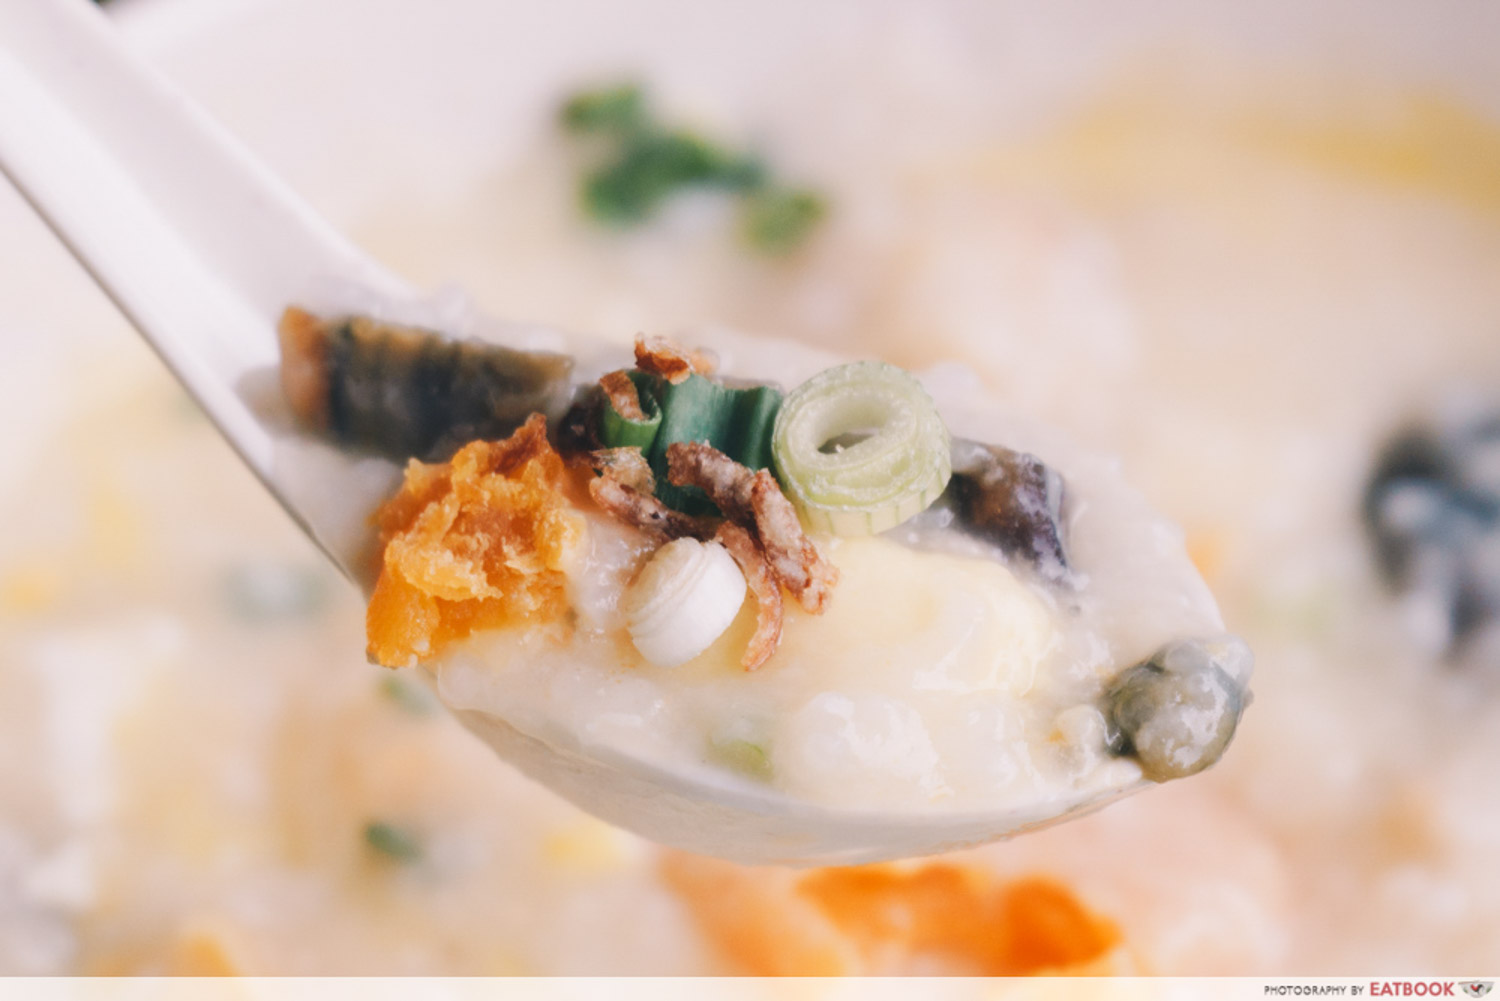 Weng Kiang Kee Porridge - Egg spoon